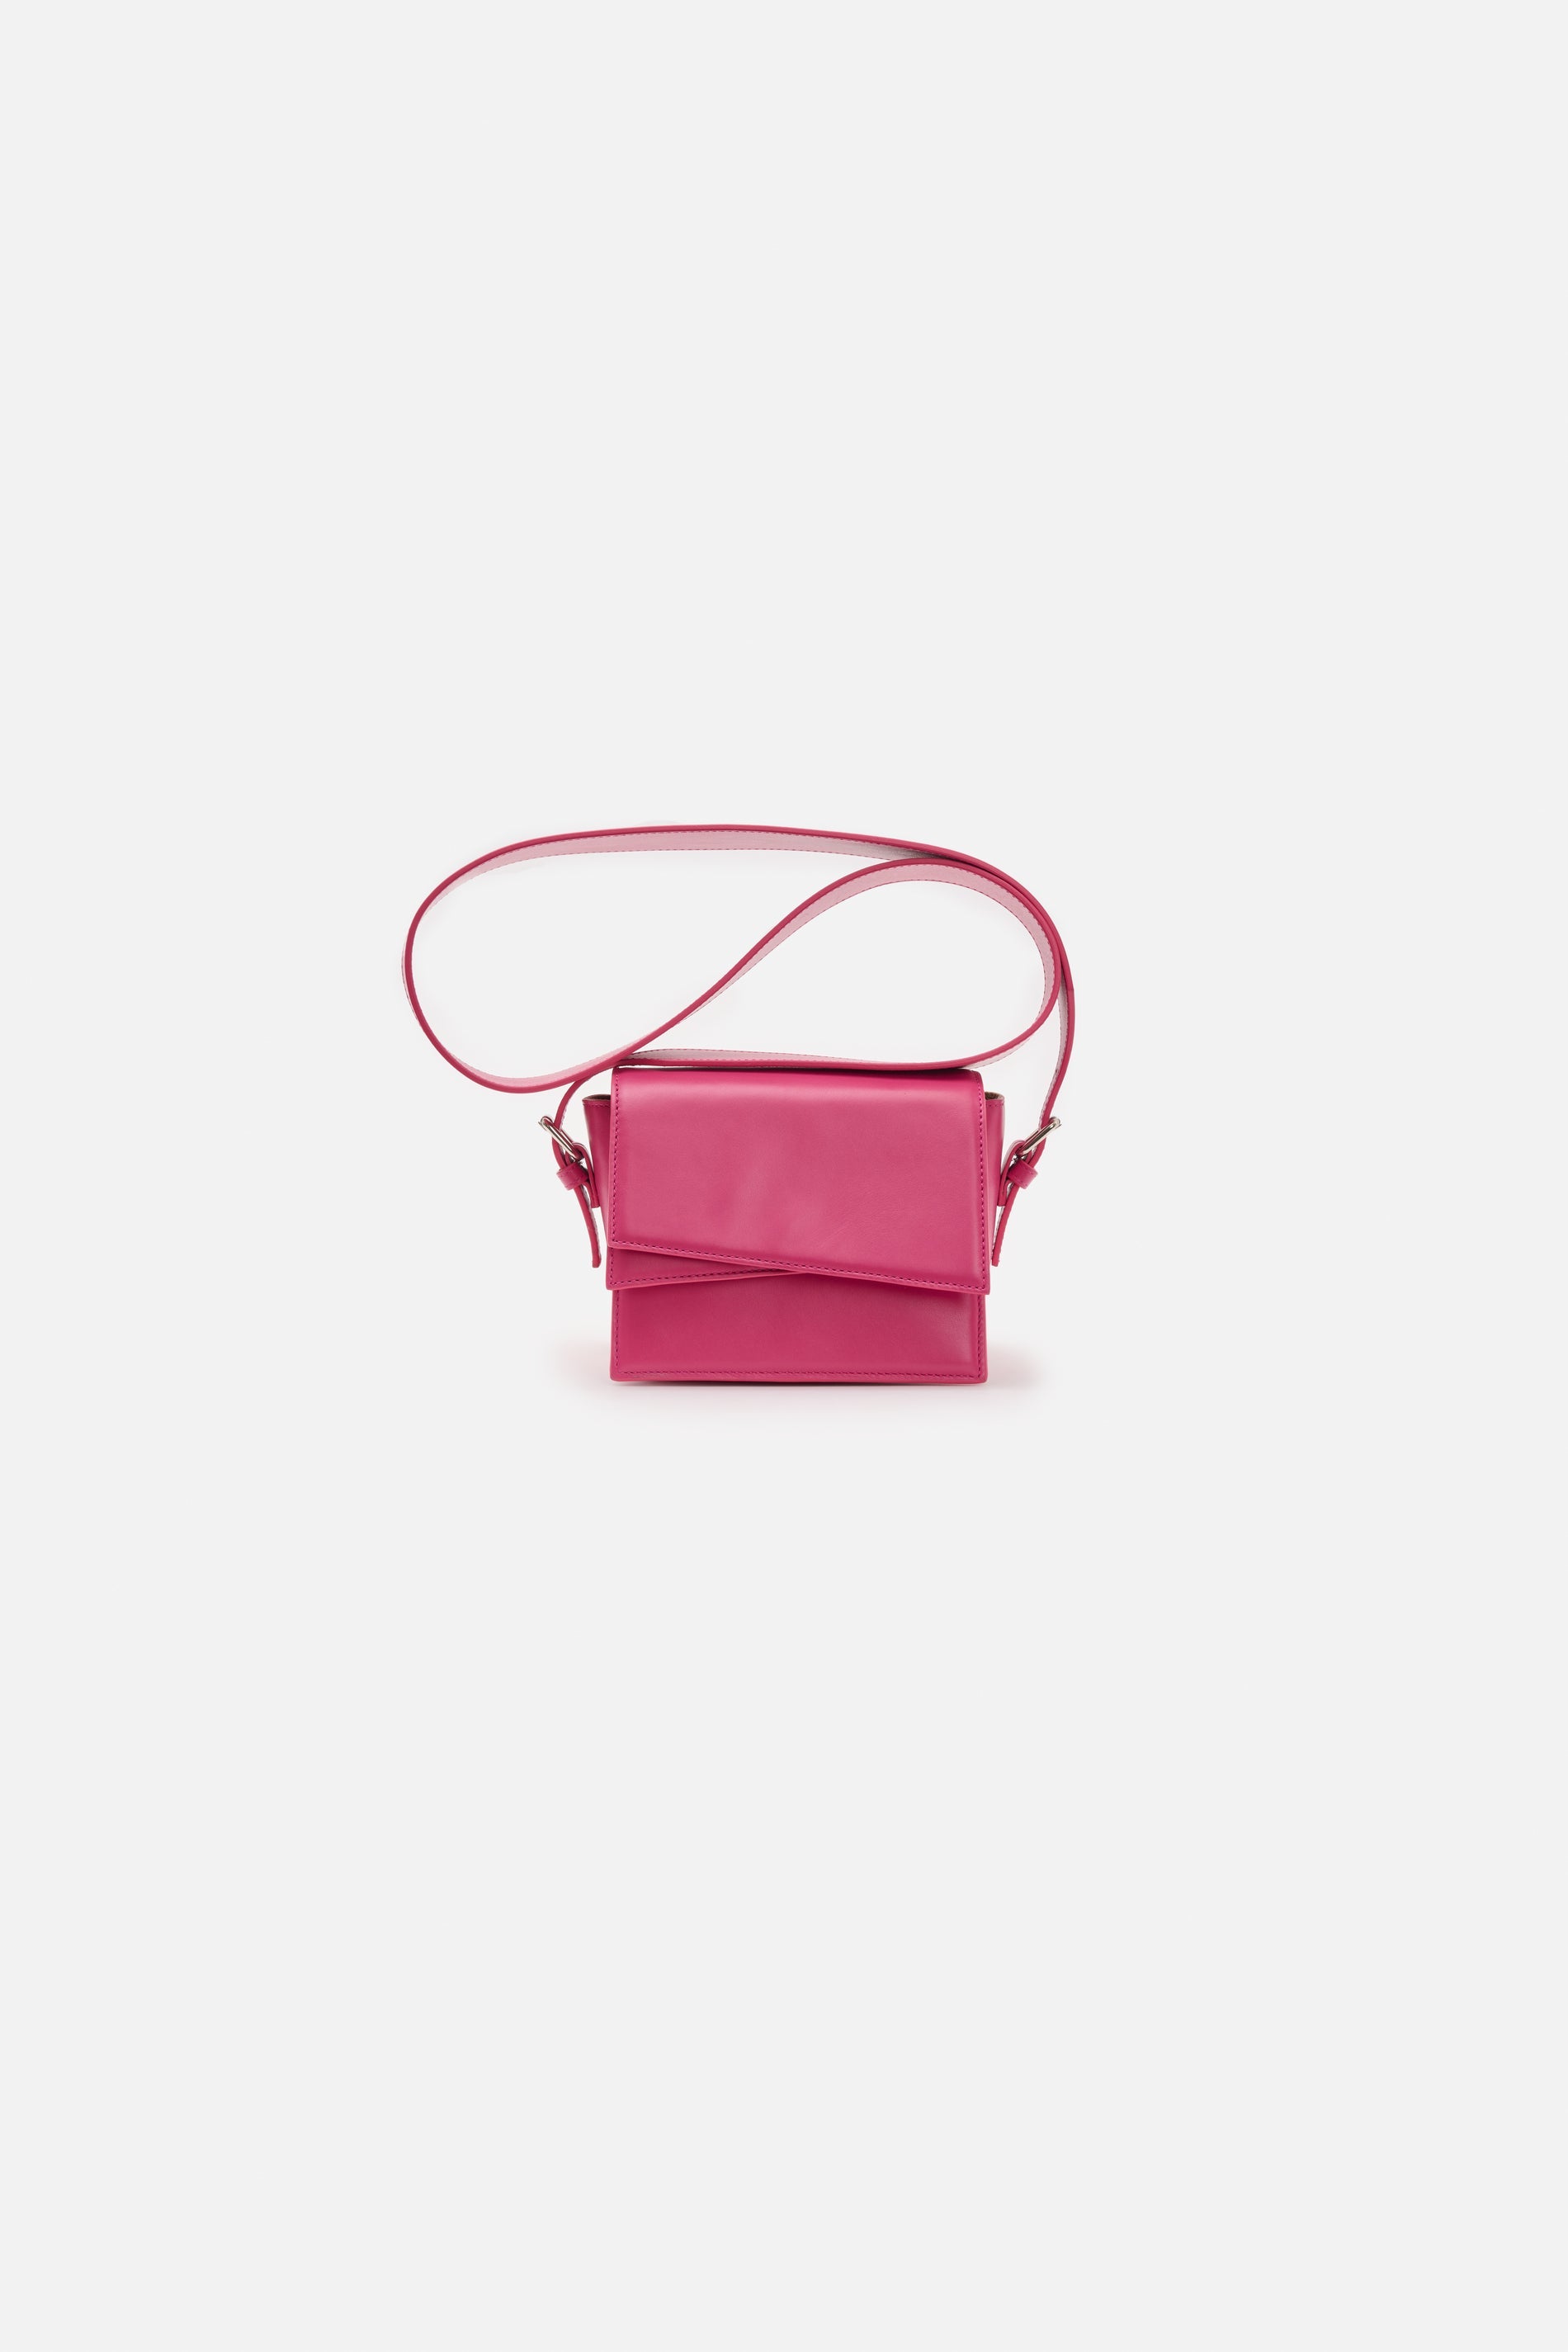 CLOSED-SHOULDER BAG S-Accessoires-Outlet-Sale